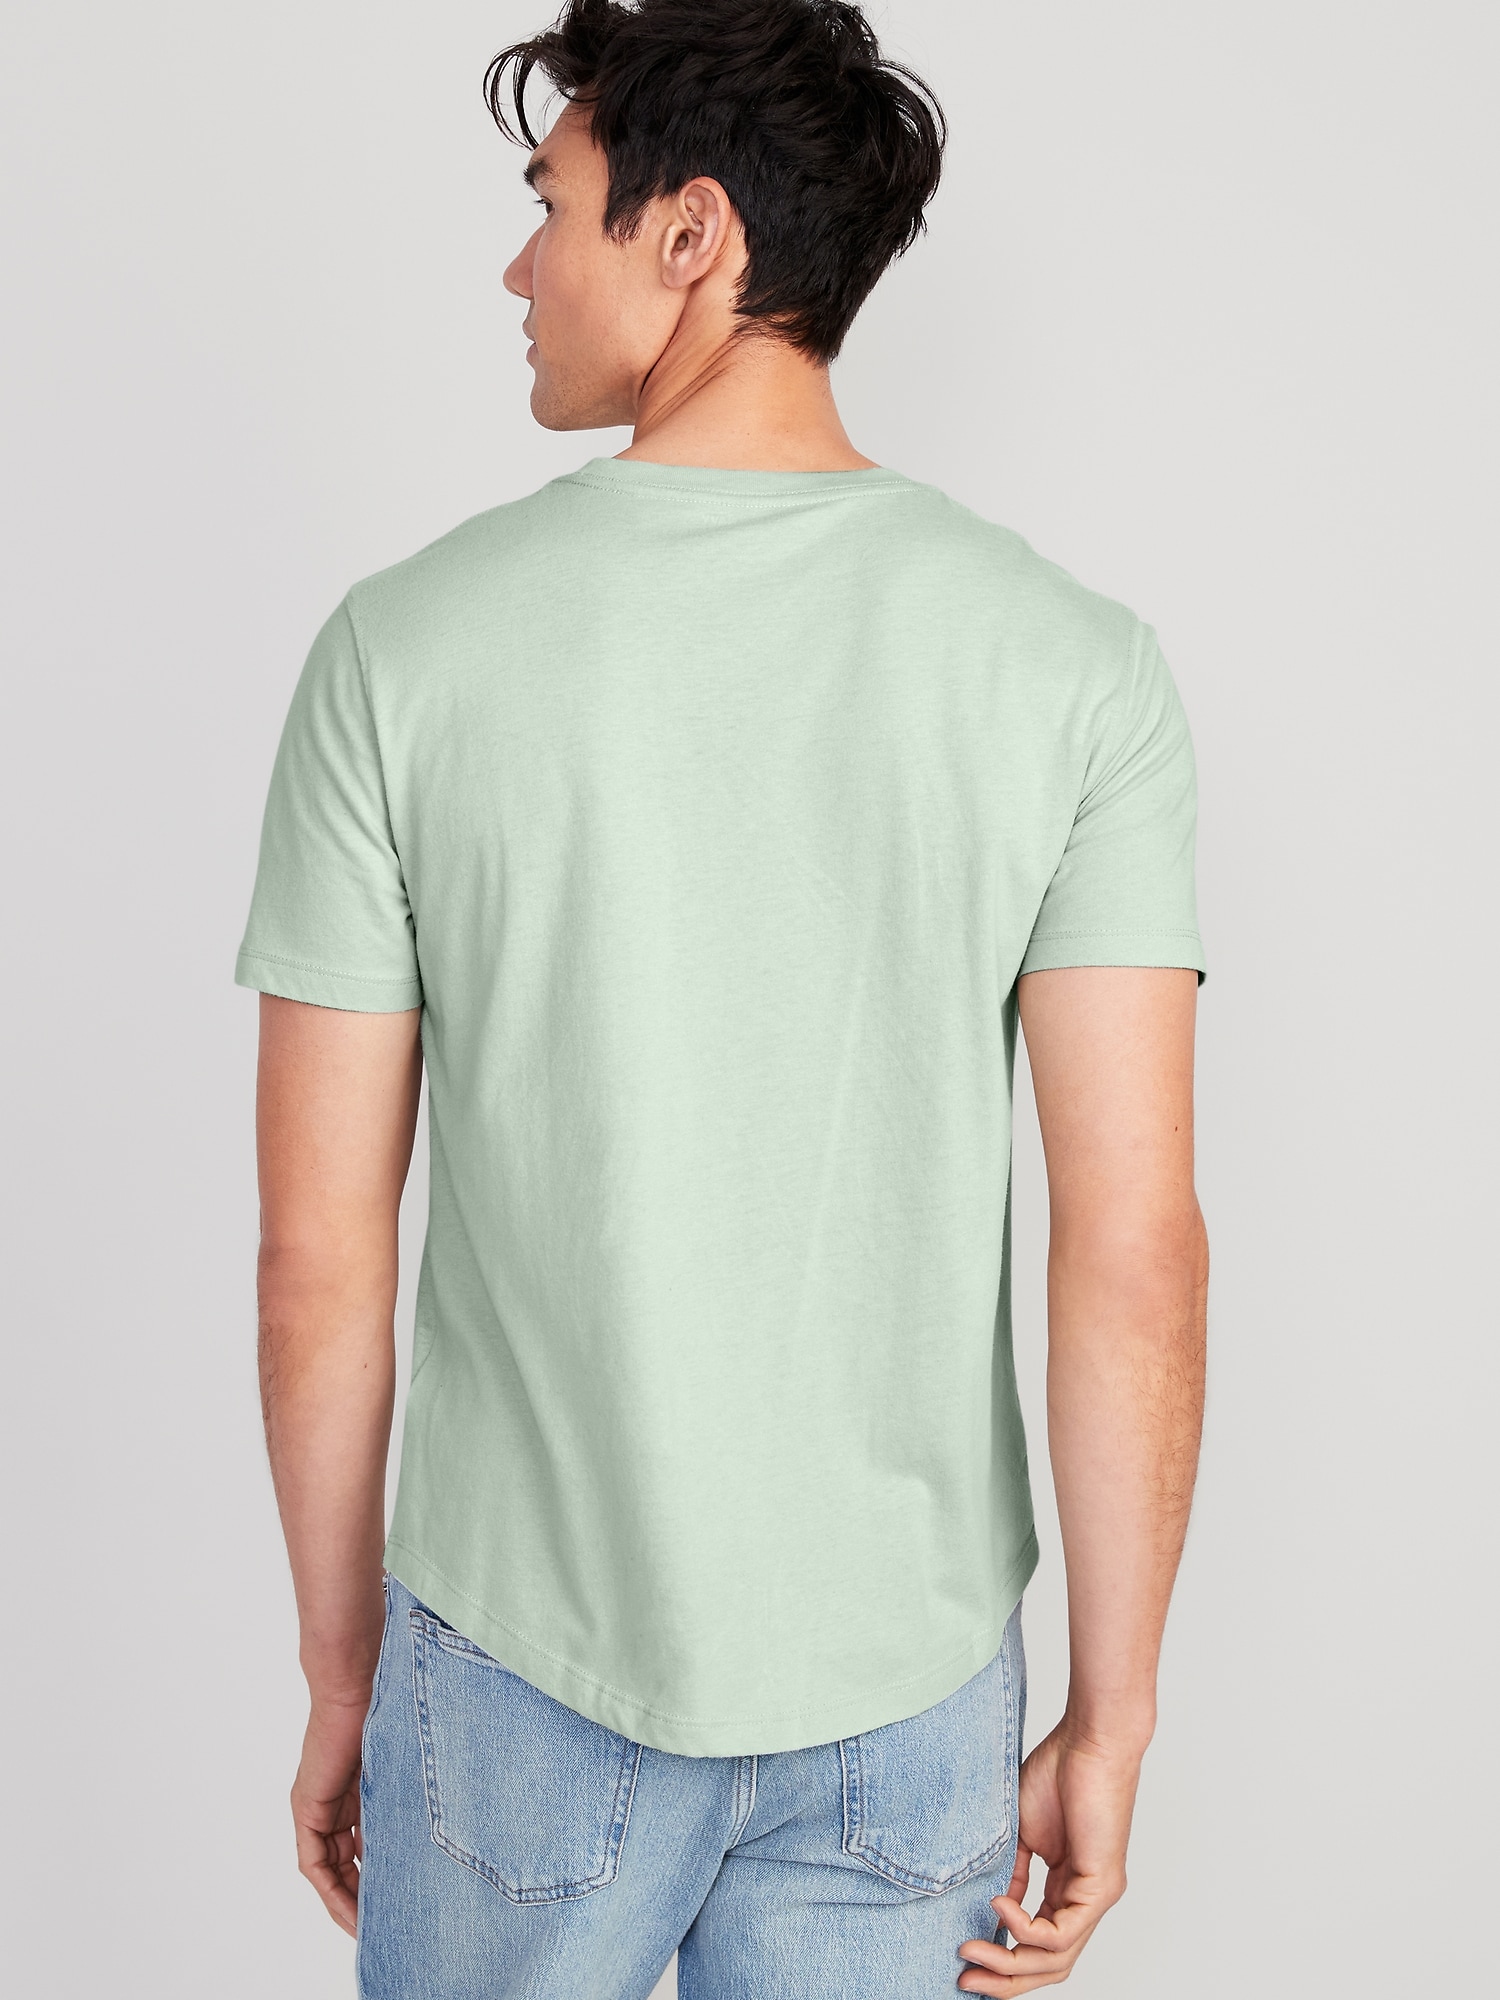 Soft-Washed Curved-Hem T-Shirt | Old Navy